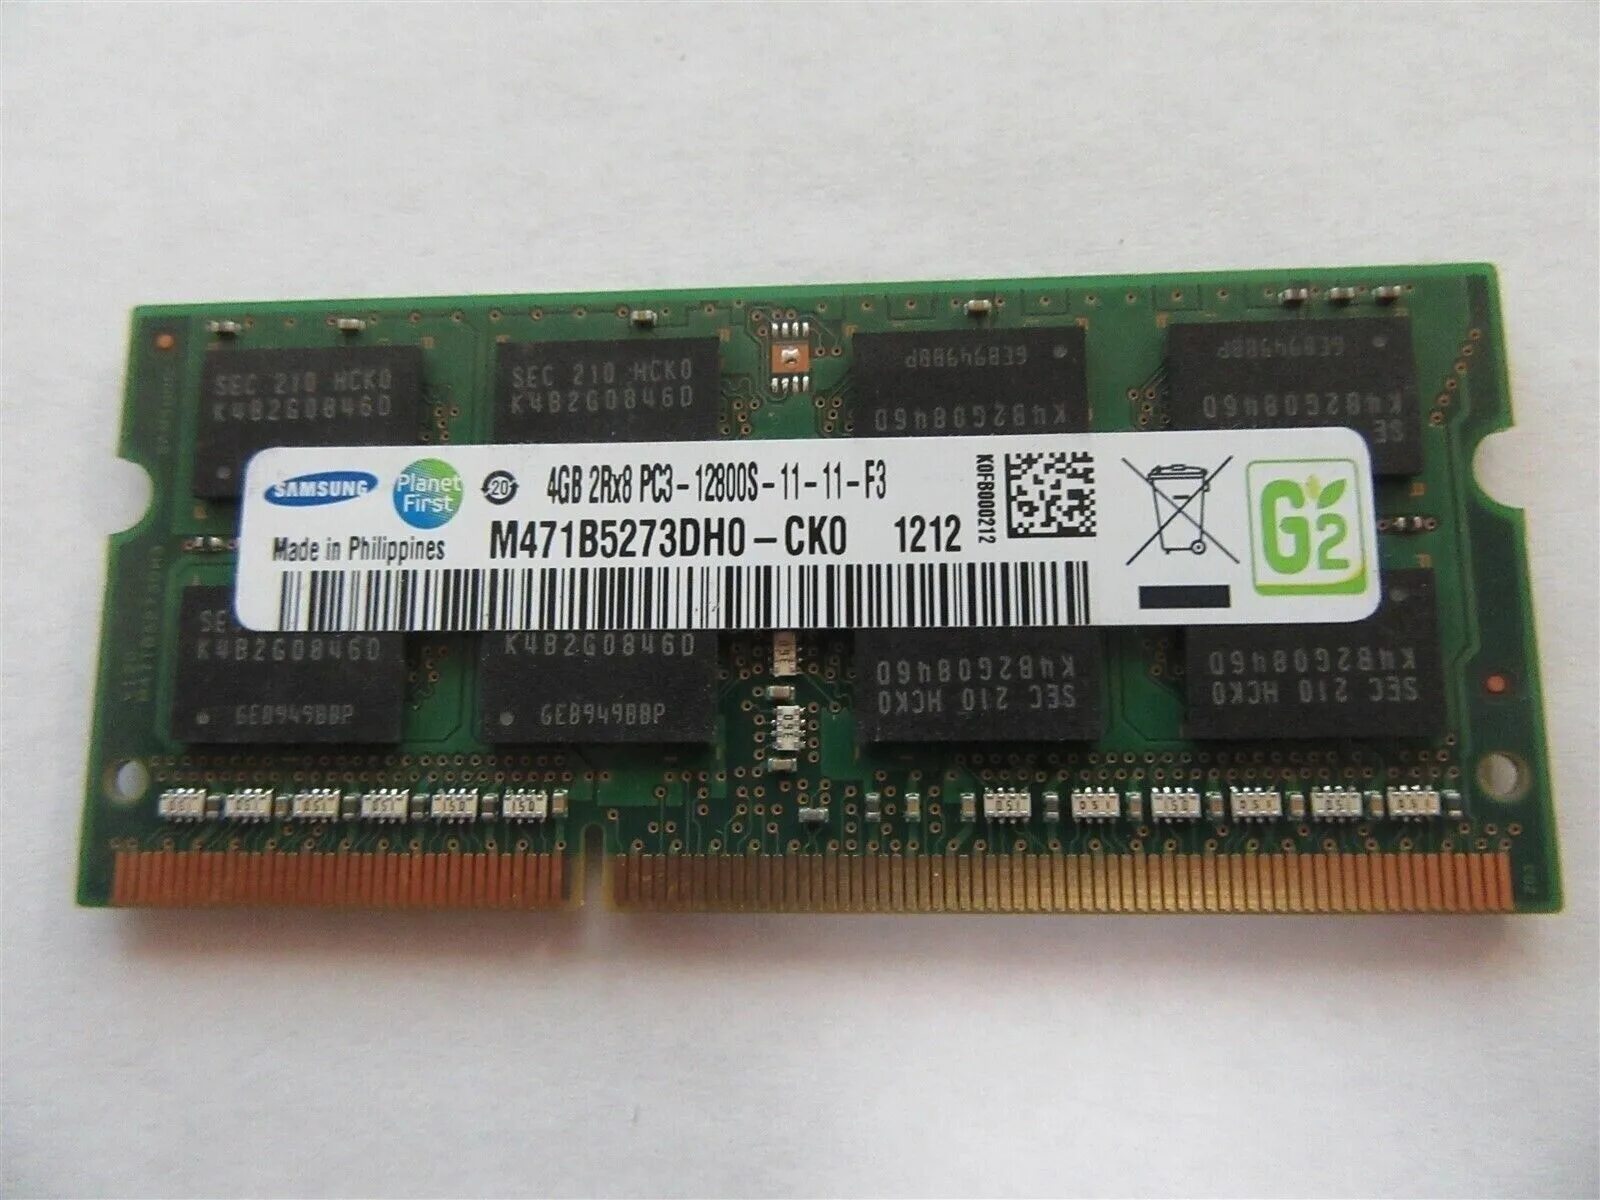 M471b5273dh0-ck0. Оперативная память Samsung ddr3 4gb m471b5273dh0-ch9. Samsung 4 ГБ ddr3 1600 МГЦ SODIMM cl11 m471b5273dh0-ck0. M378b5273dh0-ck0. Память sodimm ddr3 4gb